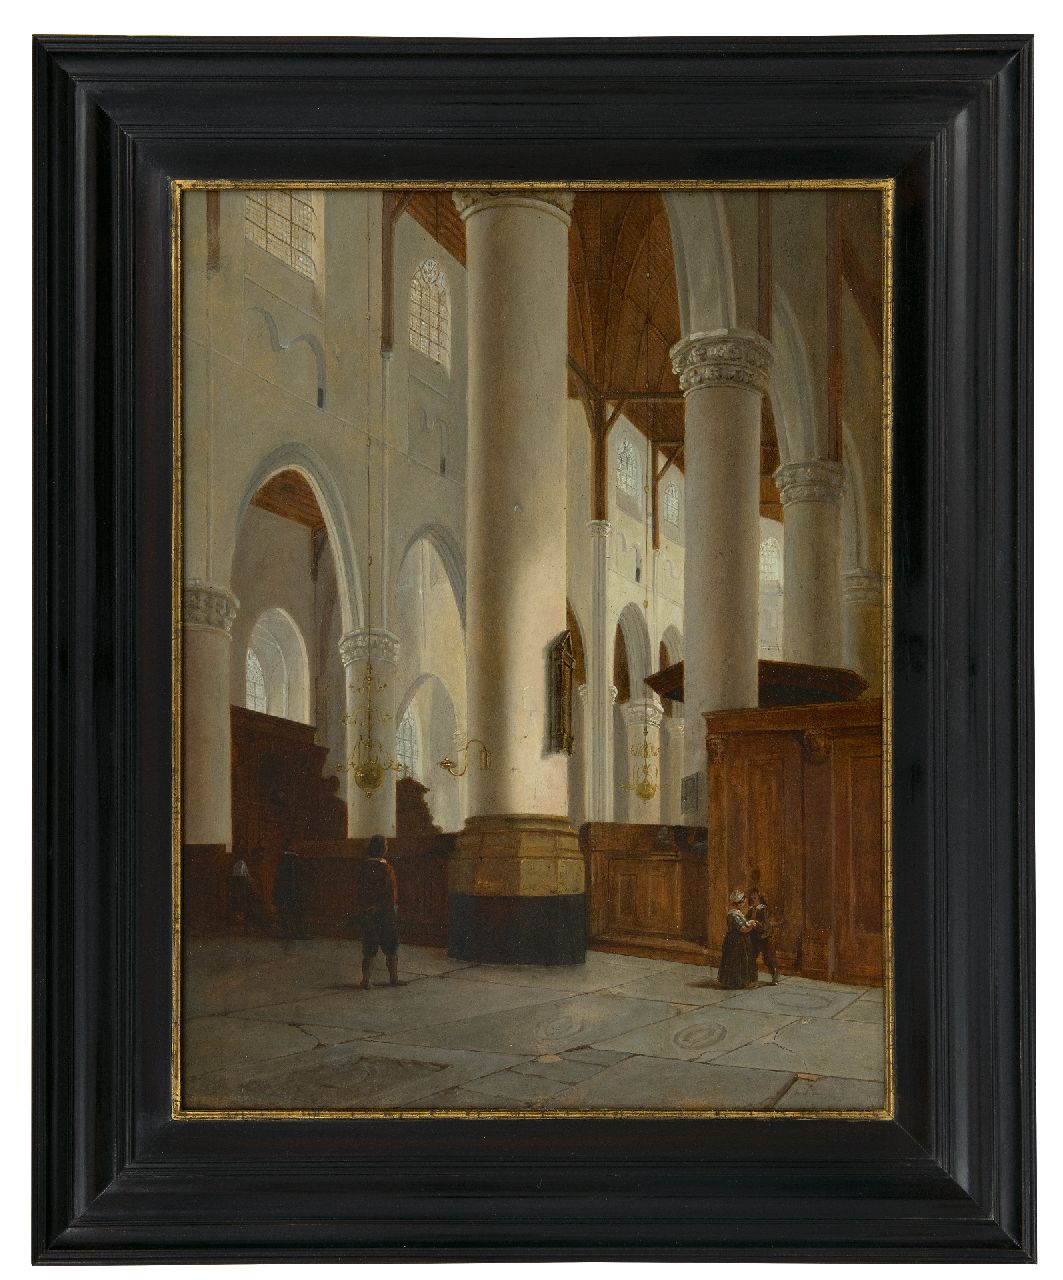 Tetar van Elven J.B.  | Jan 'Johannes' Baptist Tetar van Elven | Schilderijen te koop aangeboden | Interieur van de Laurenskerk in Rotterdam, olieverf op paneel 42,8 x 33,3 cm, gesigneerd linksonder met initialen